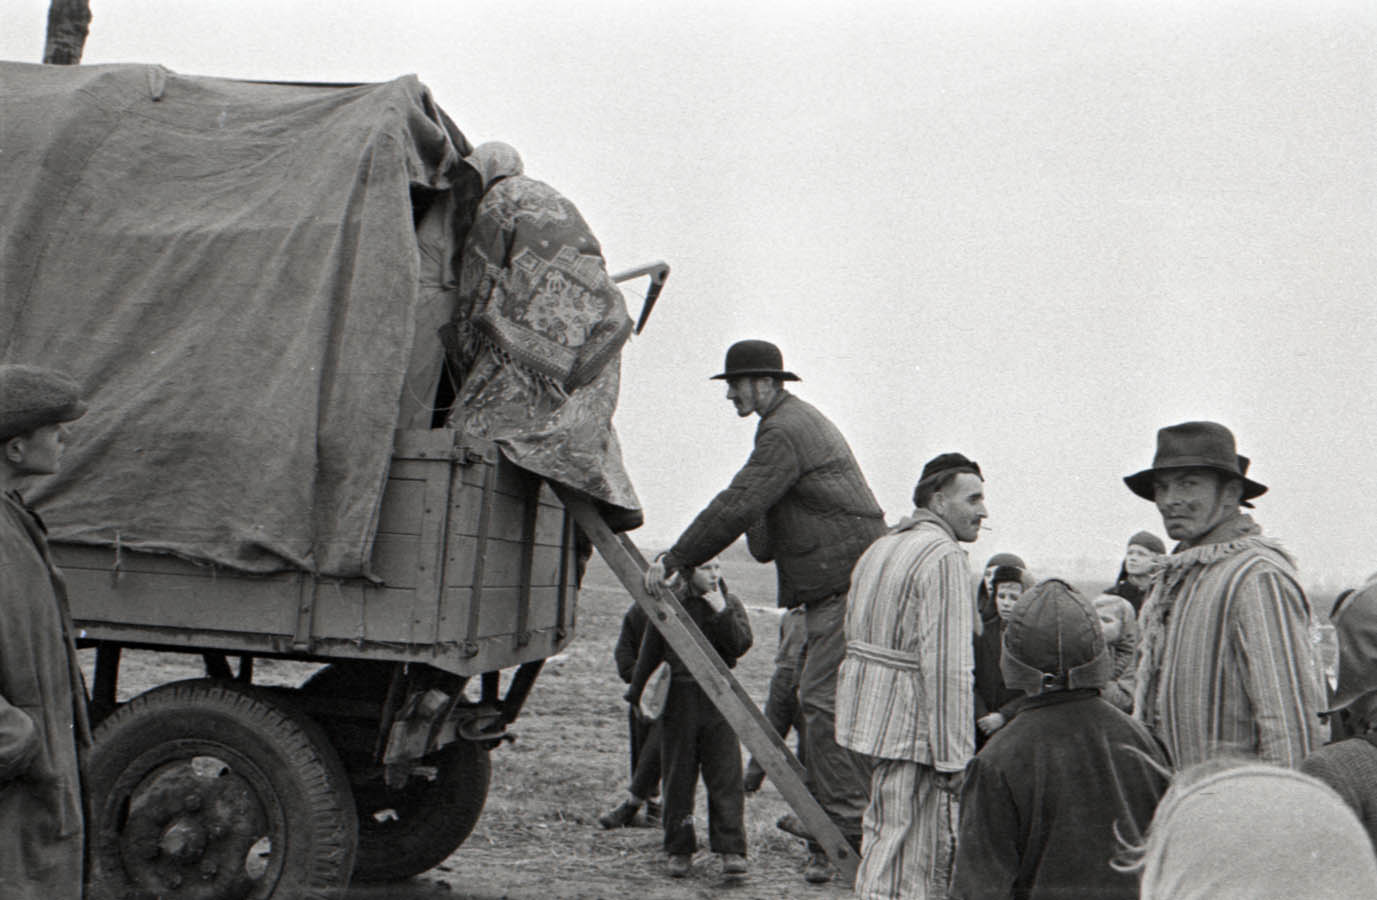 Fotografia czarno-biała przedstawiająca wsiadających do drewnianego wozu przebierańców. W tle widoczne pola uprawne.